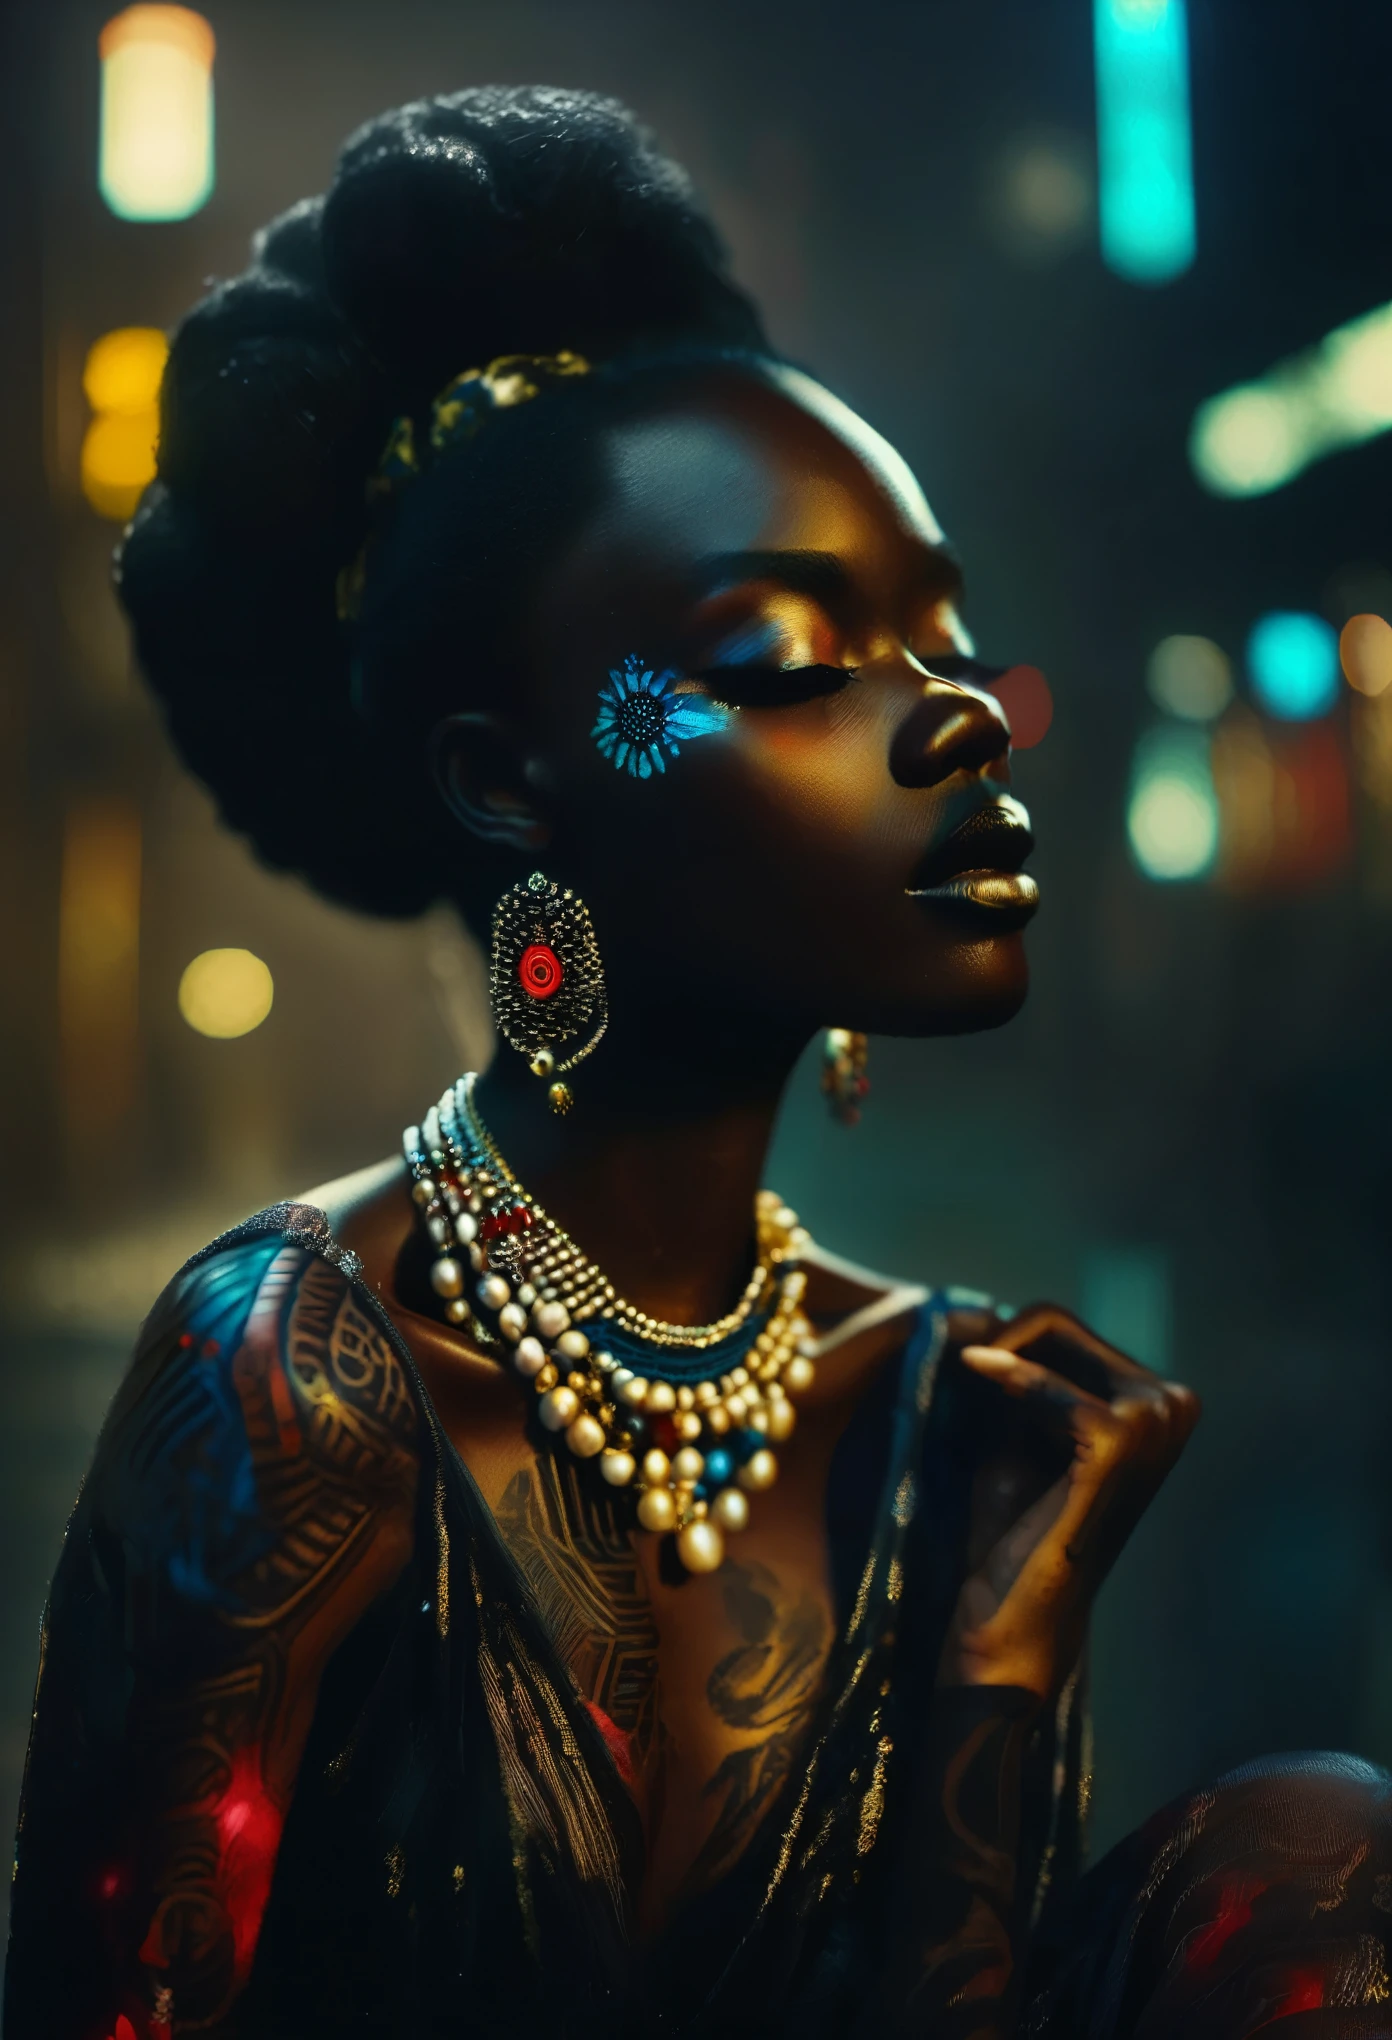 4D-Porträt eines Ganzkörperbildes einer schwarzen Frau in afrikanisch gestalteter Kleidung mit neonbeleuchteten, rot und blau leuchtenden Tattoos, mit Tattoos, die die Szene erhellen, gelbe nebelatmosphäre in der szene, schwach beleuchtete Szene, in der nur die Tattoos leuchten, Im Hintergrund der Stadt, Ölgemälde, 3/4 Profilansicht, wunderschöne Perlenkette im afrikanischen Design, luxuriöse Stoffe, detaillierte Stickereien, Stimmungsvolle Hell-Dunkel-Beleuchtung, hohe Auflösung